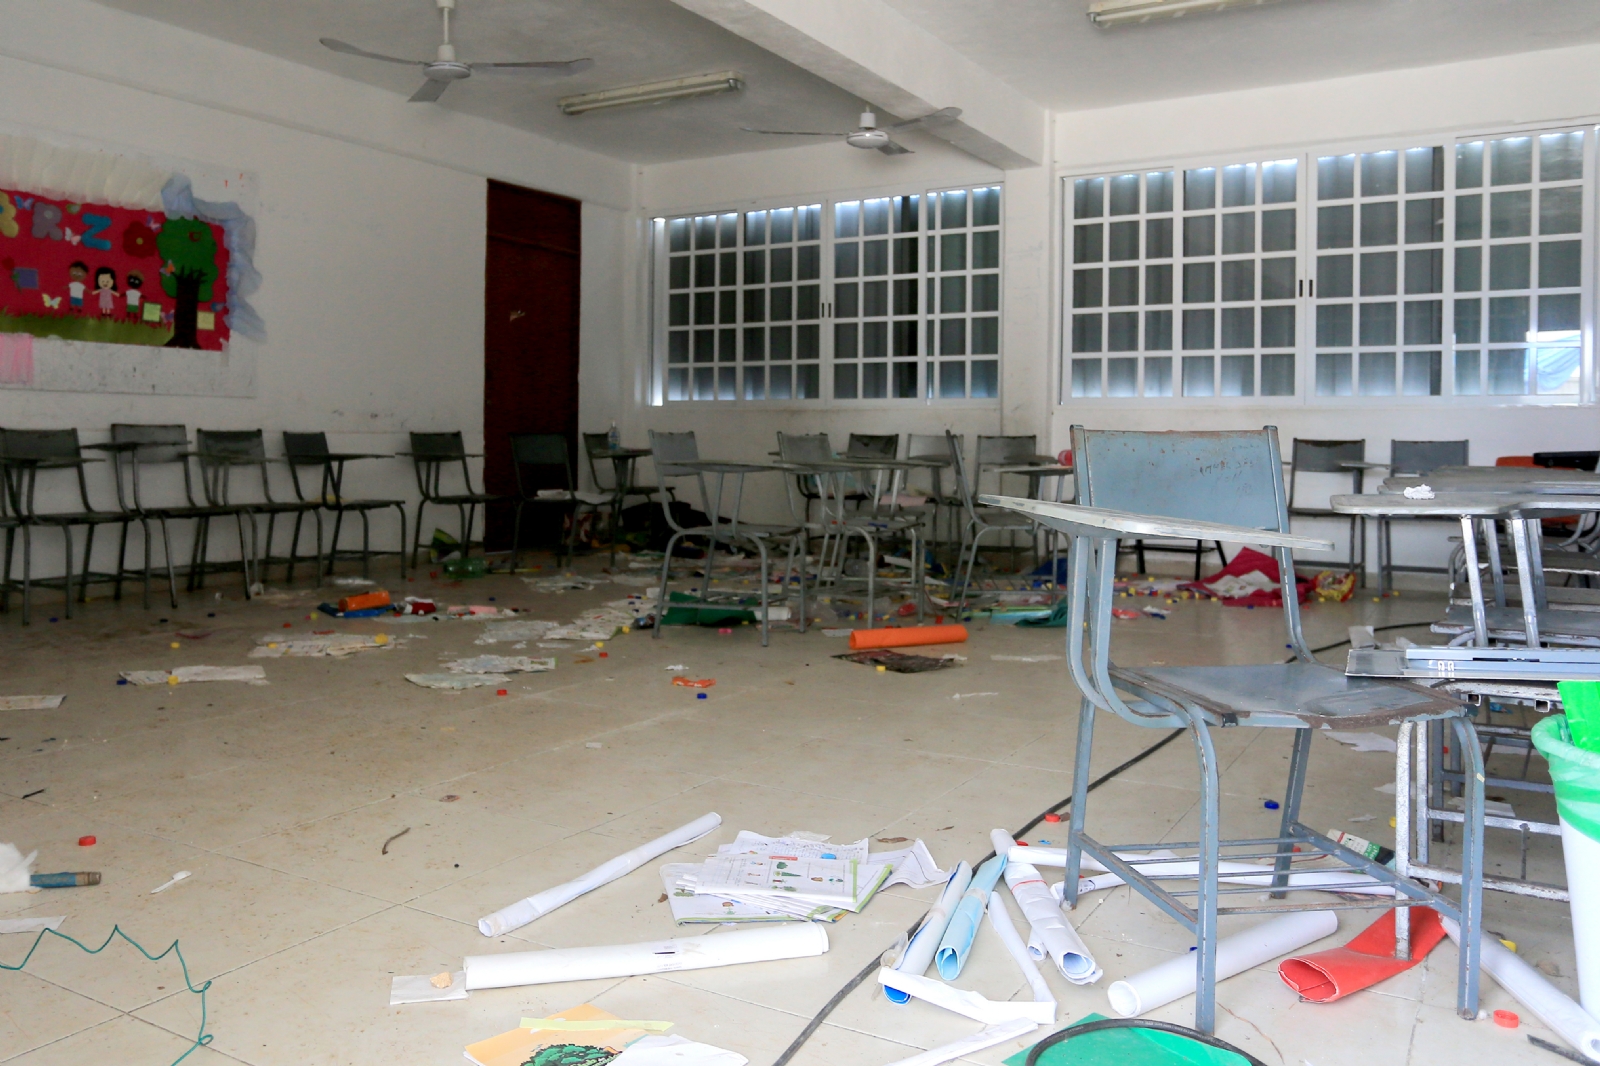 Dañadas y vandalizadas, así se encuentran las escuelas para niños con discapacidad en Cancún